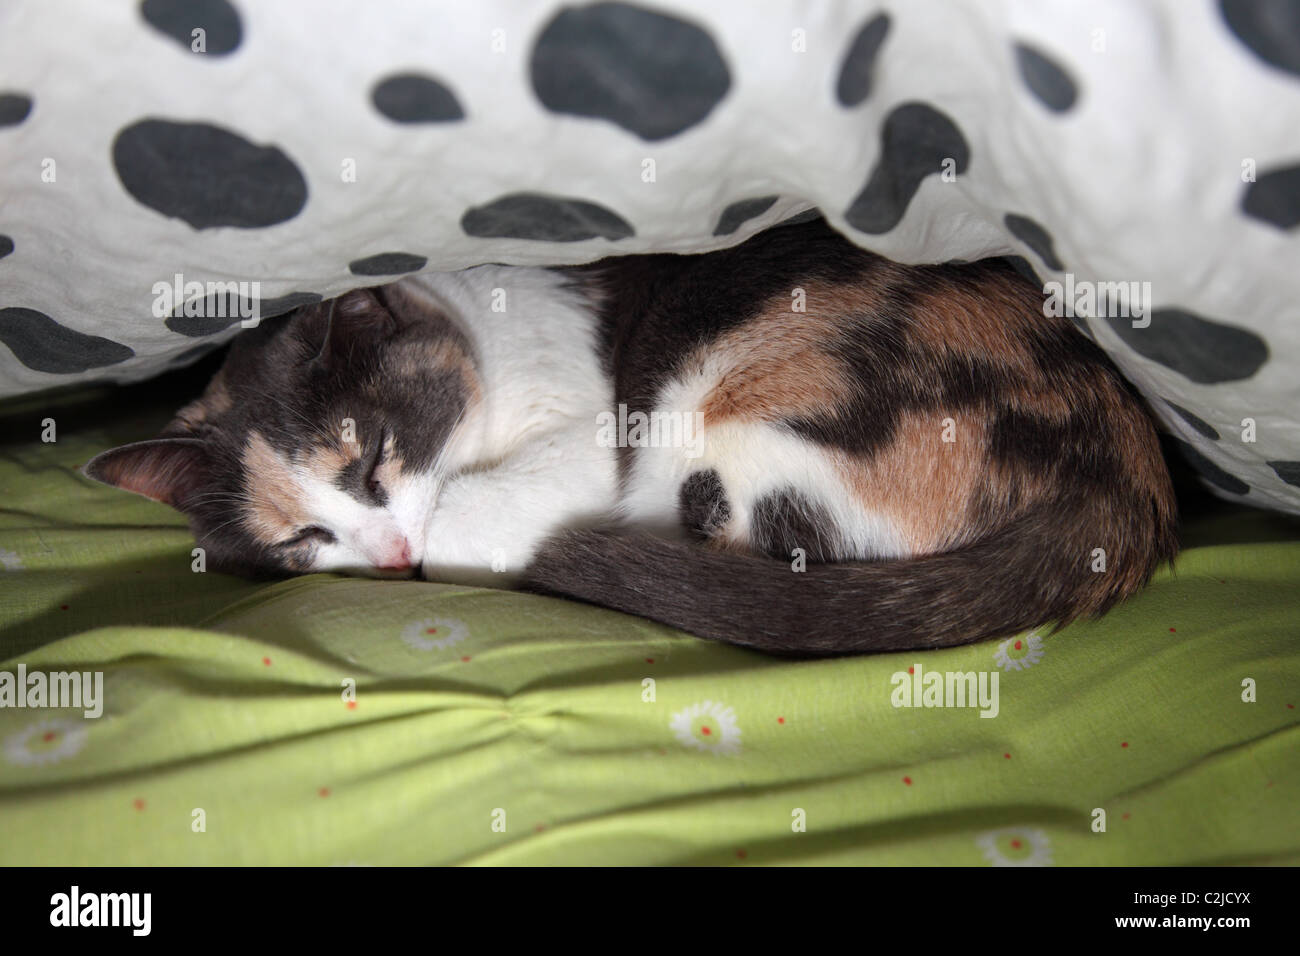 Cat sleeping between the blankets Stock Photo